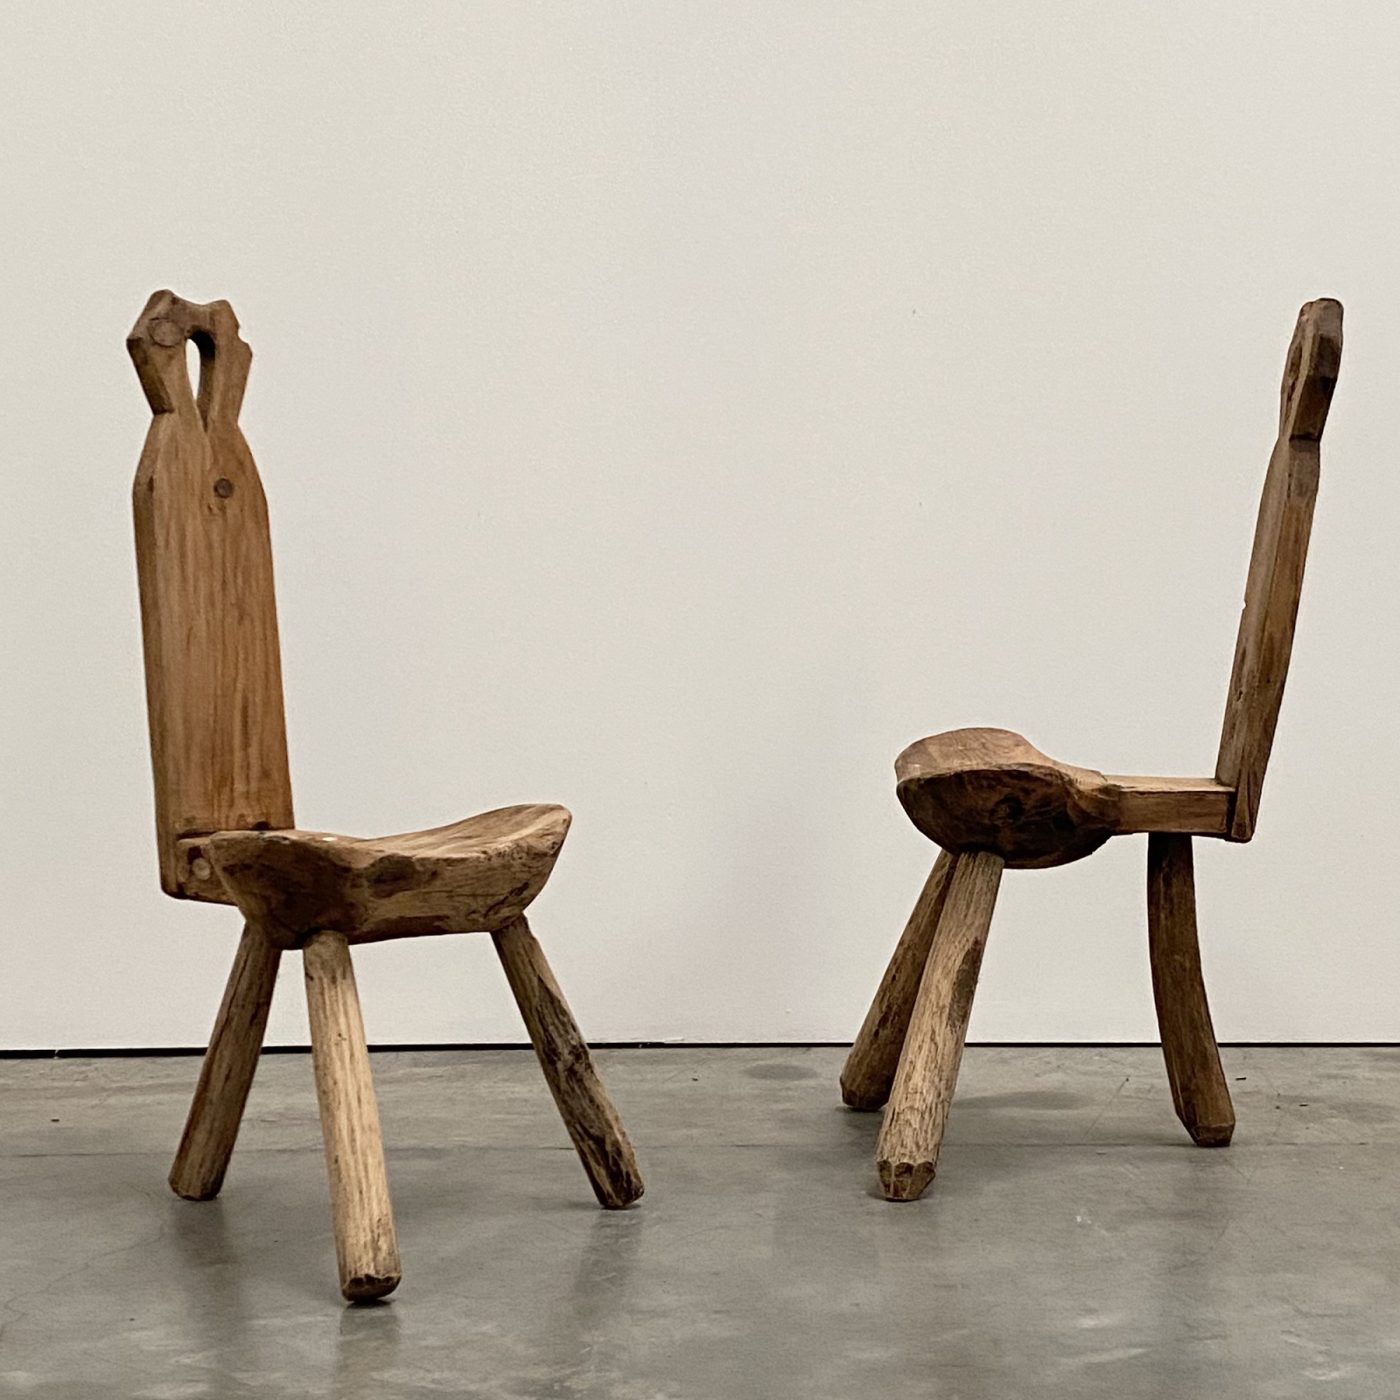 objet-vagabond-primitive-chairs0002